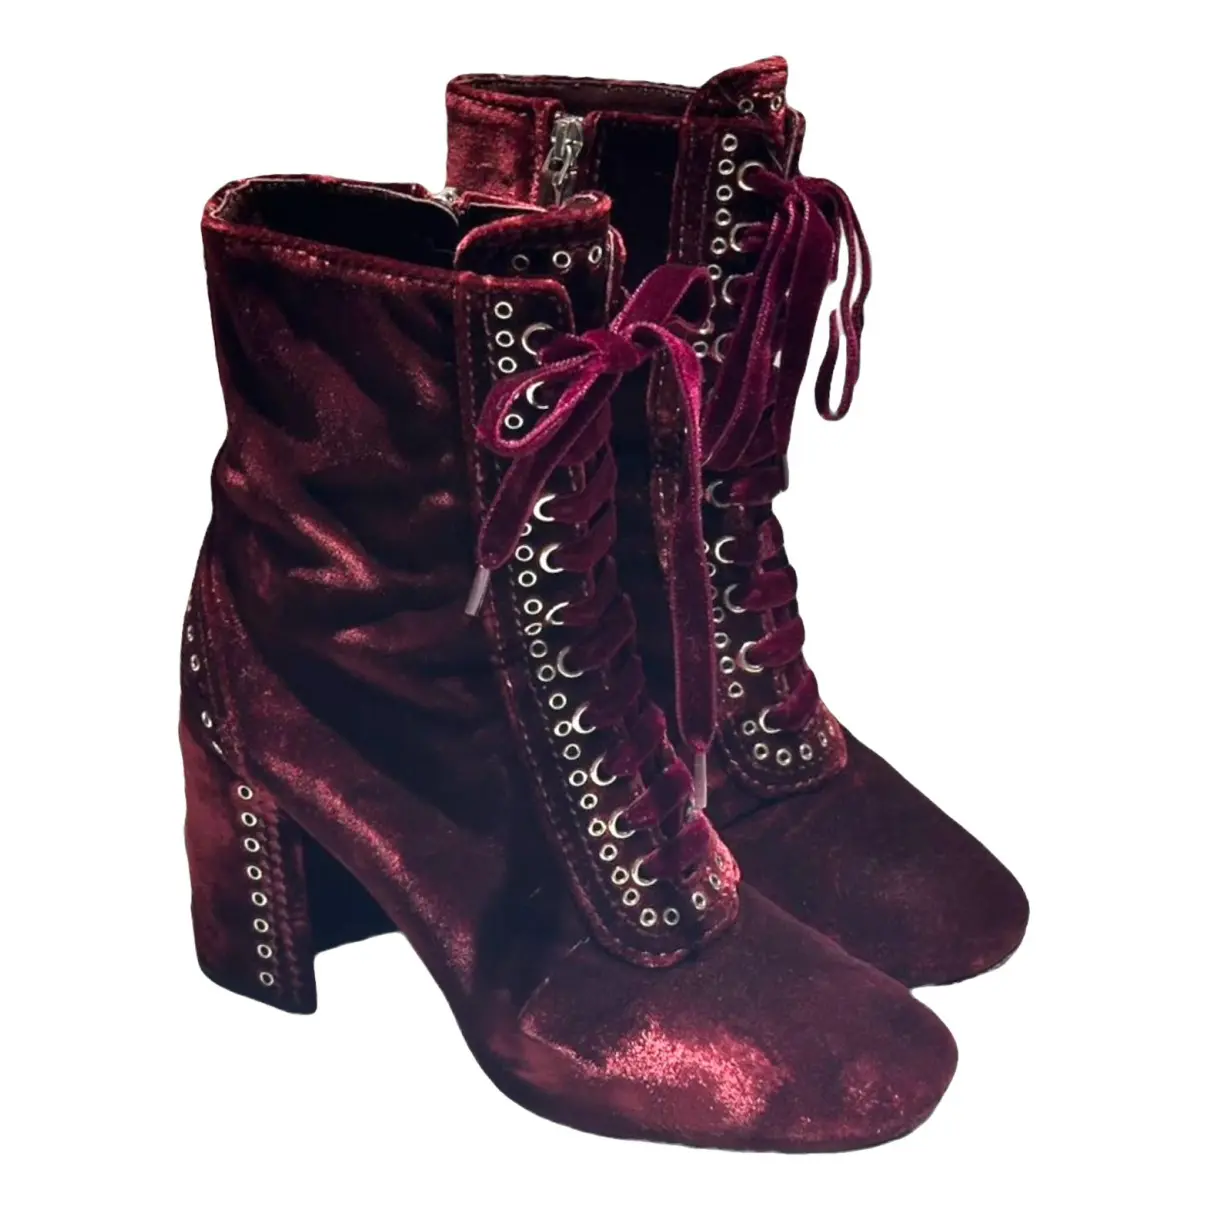 Velvet lace up boots